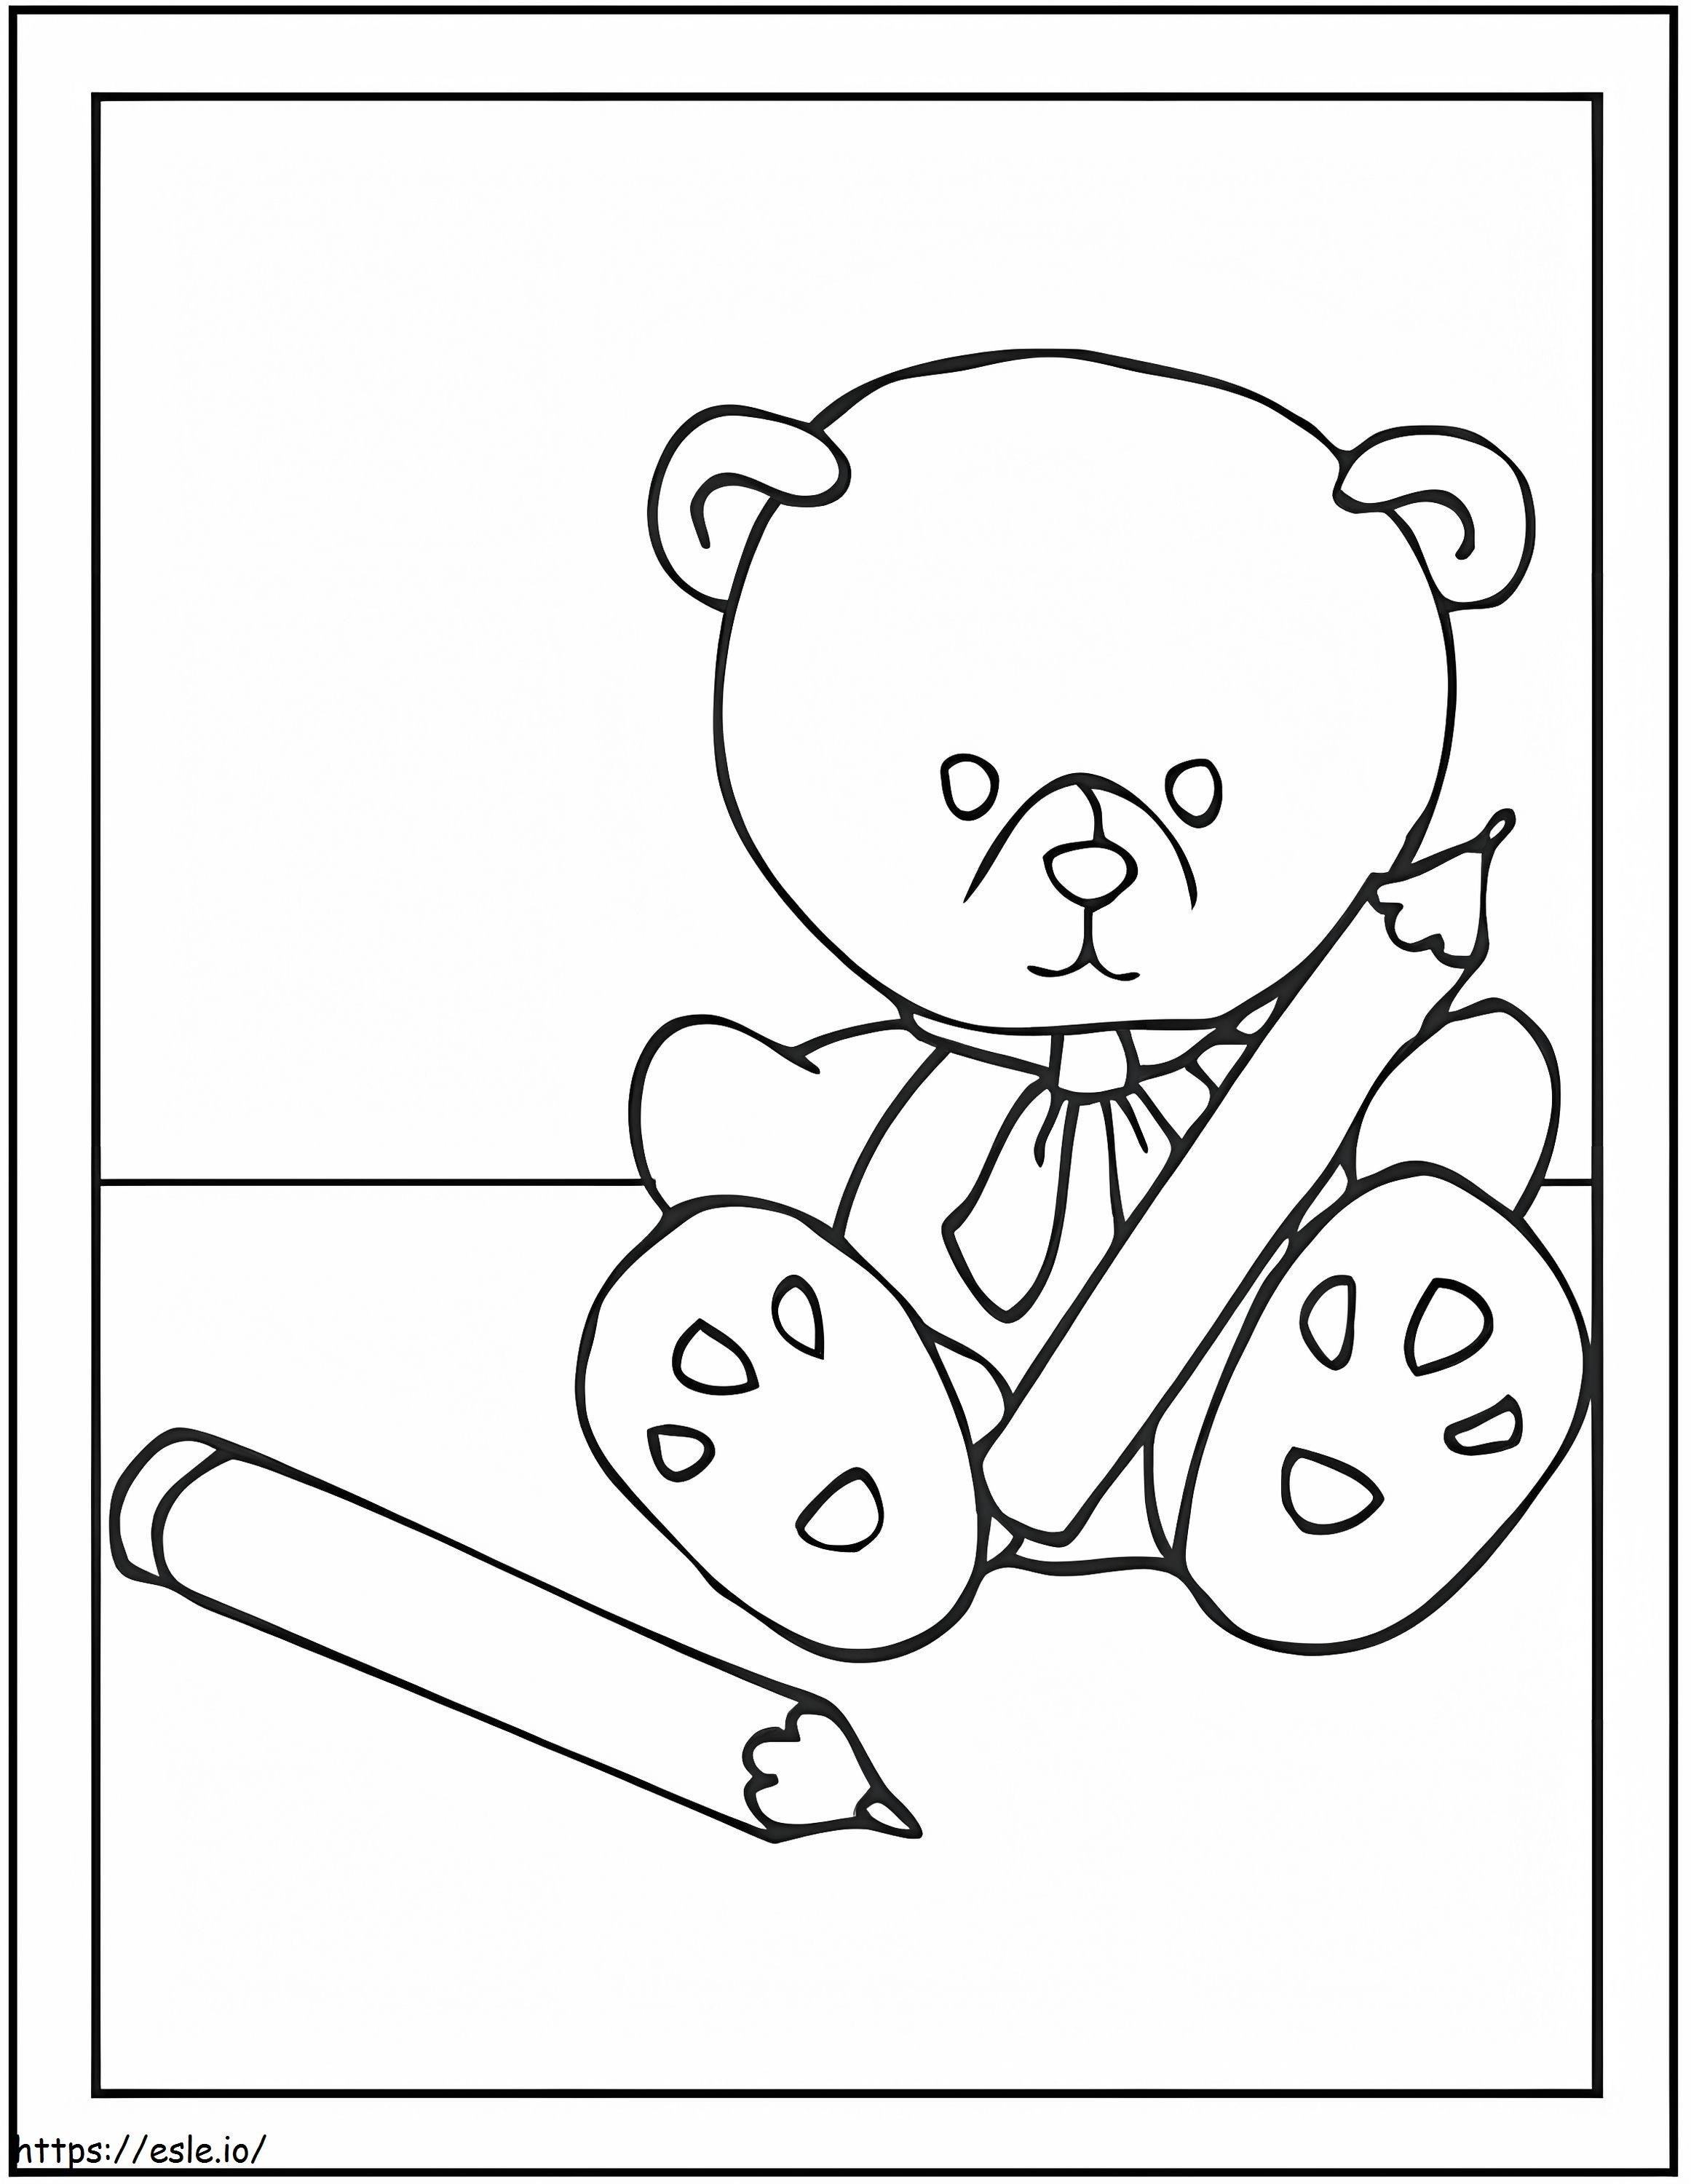 Ursinho de pelúcia com lápis para colorir